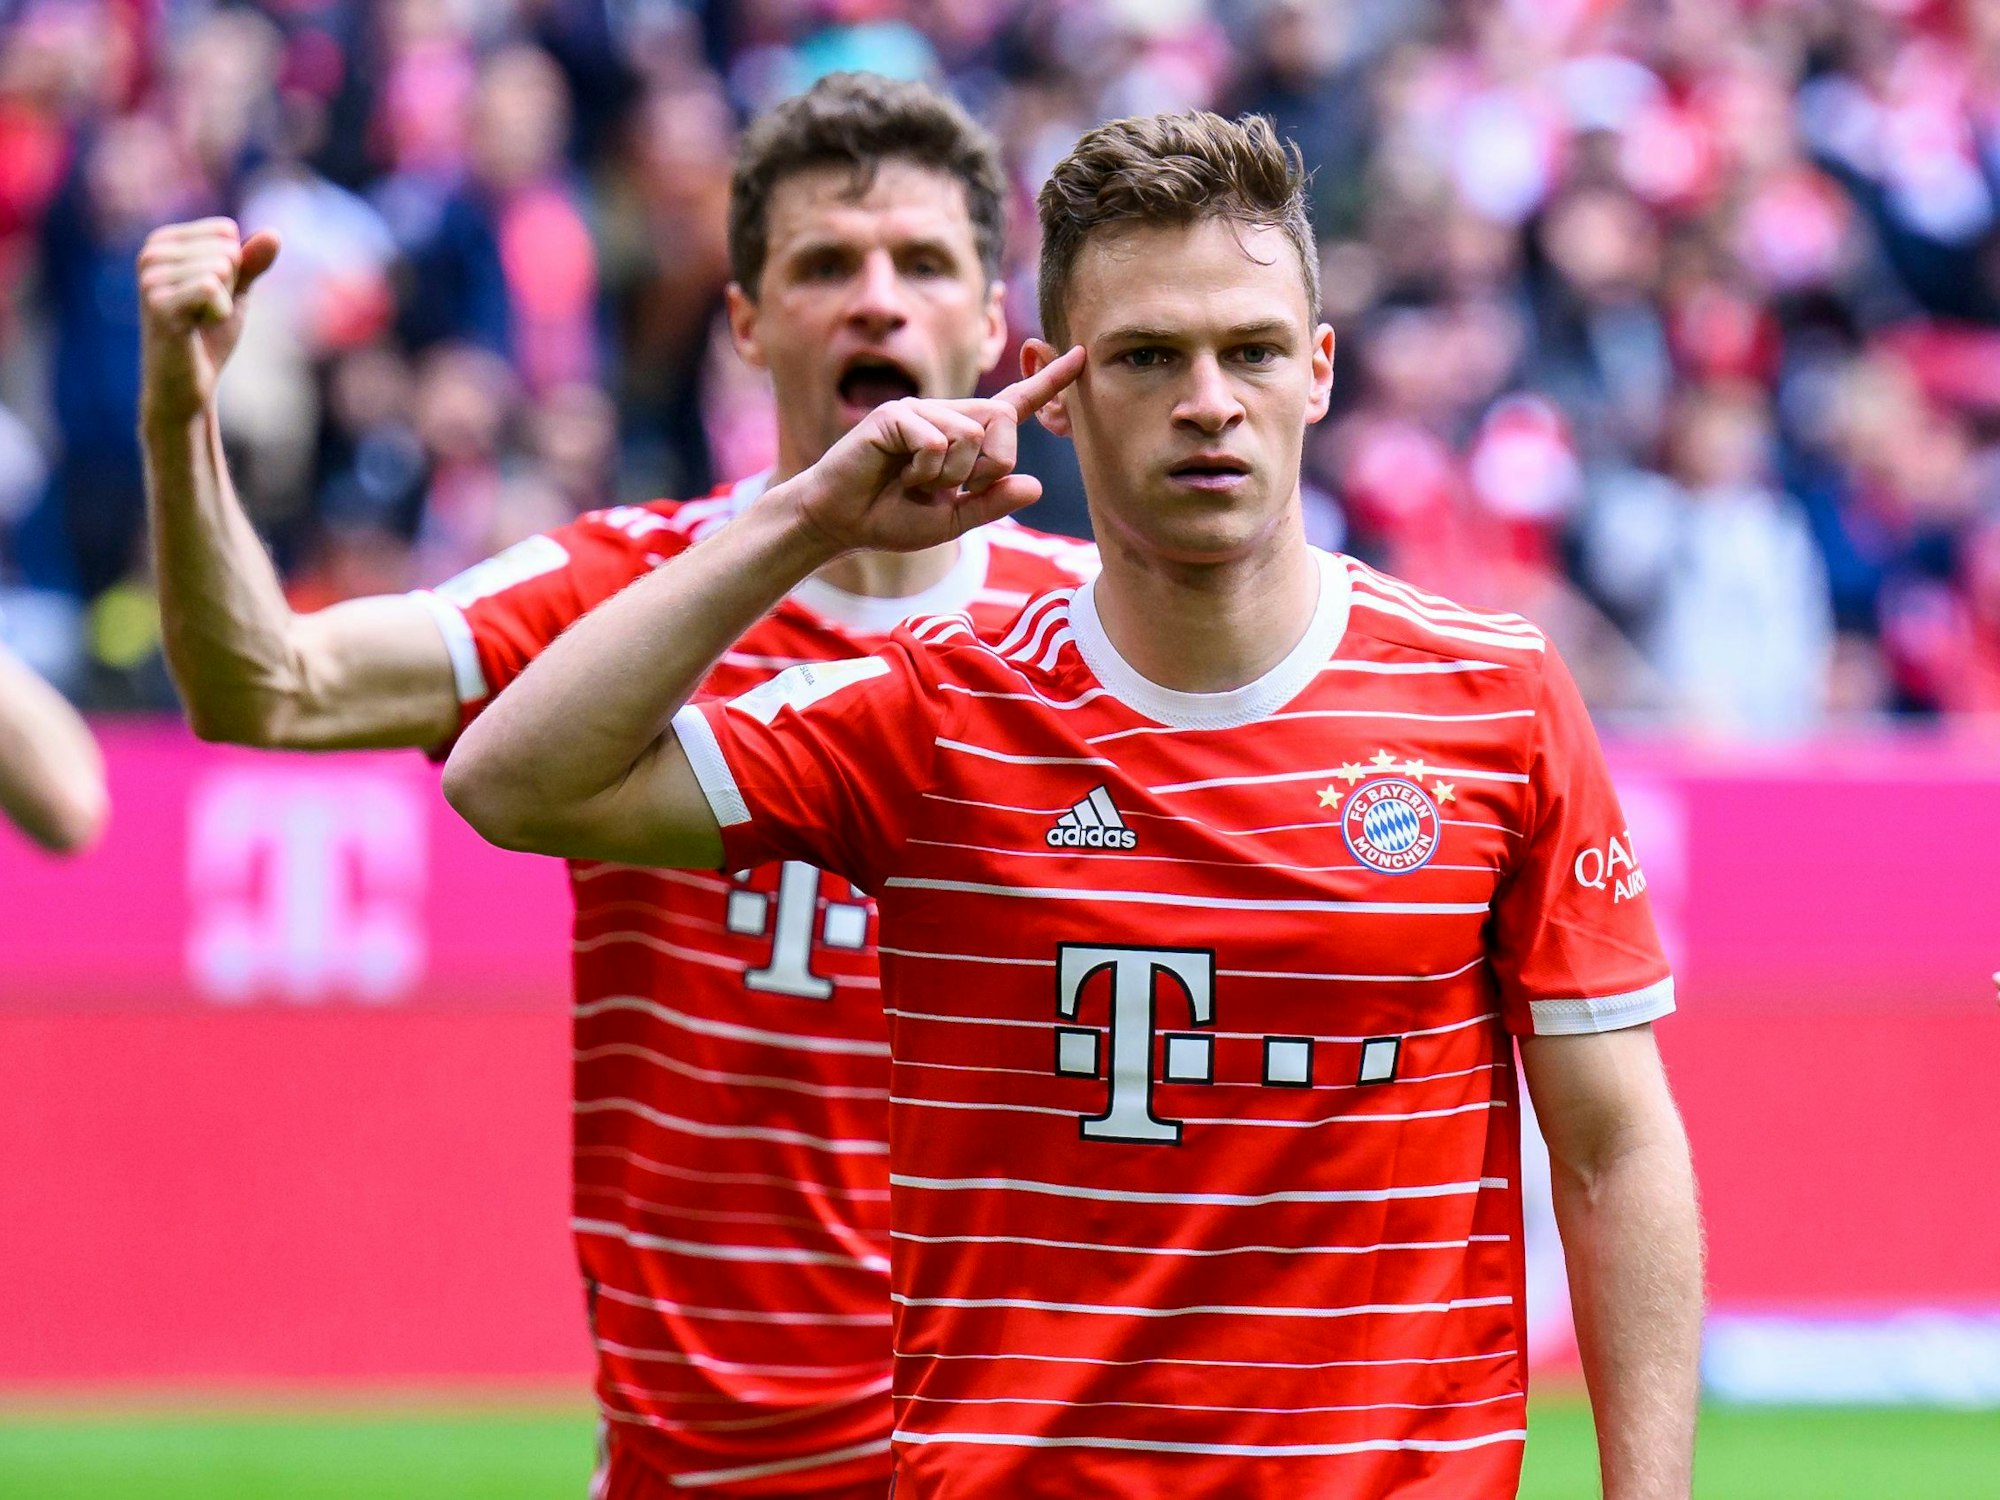 Die Bayern-Stars Joshua Kimmich (r.) und Thomas Müller jubeln über einen Treffer gegen Schalke 04.